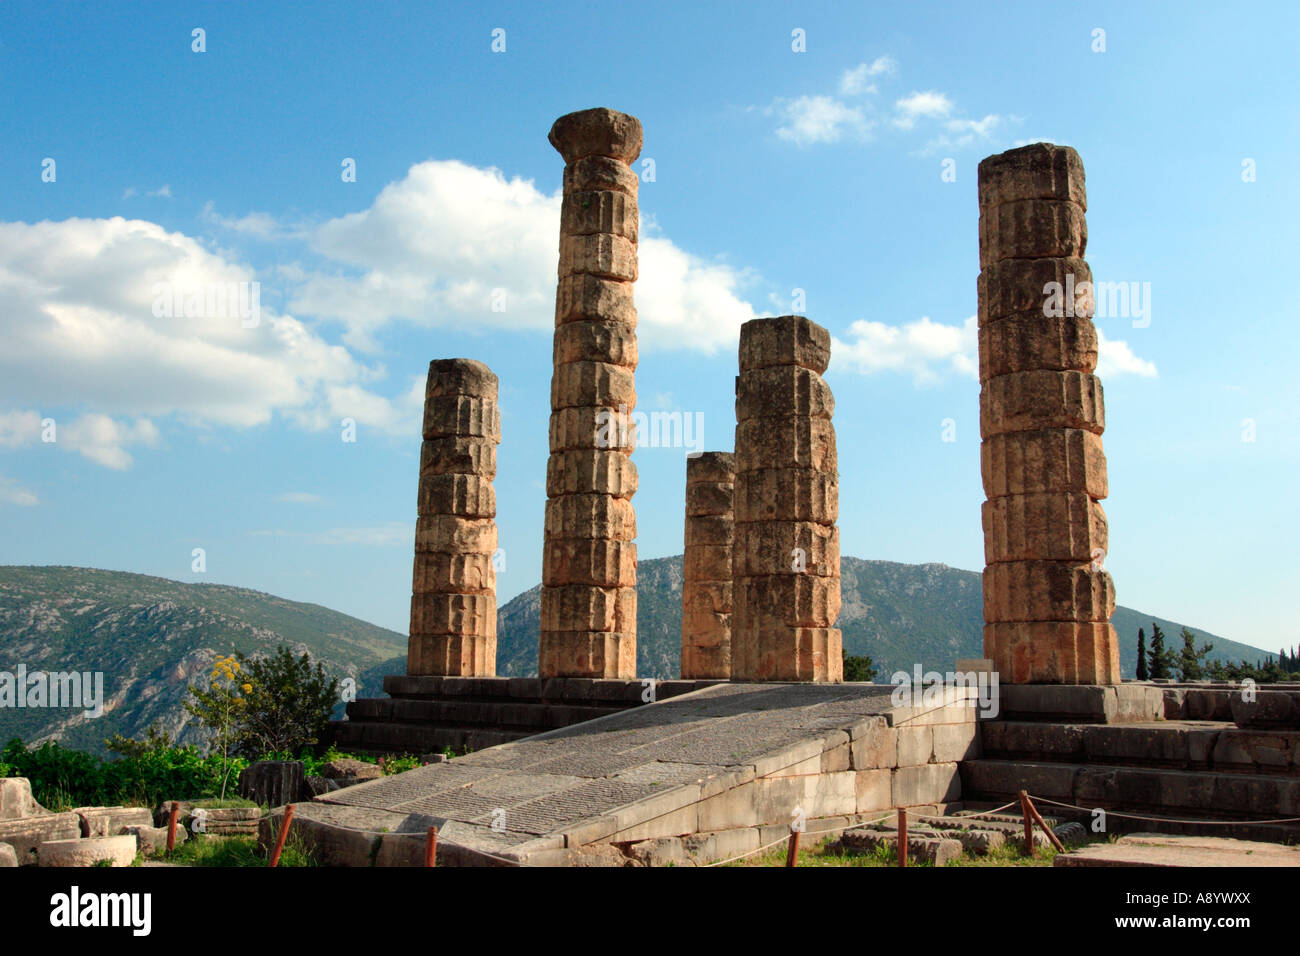 Ruins of the Temple of Apollo Delphi Greece Stock Photo